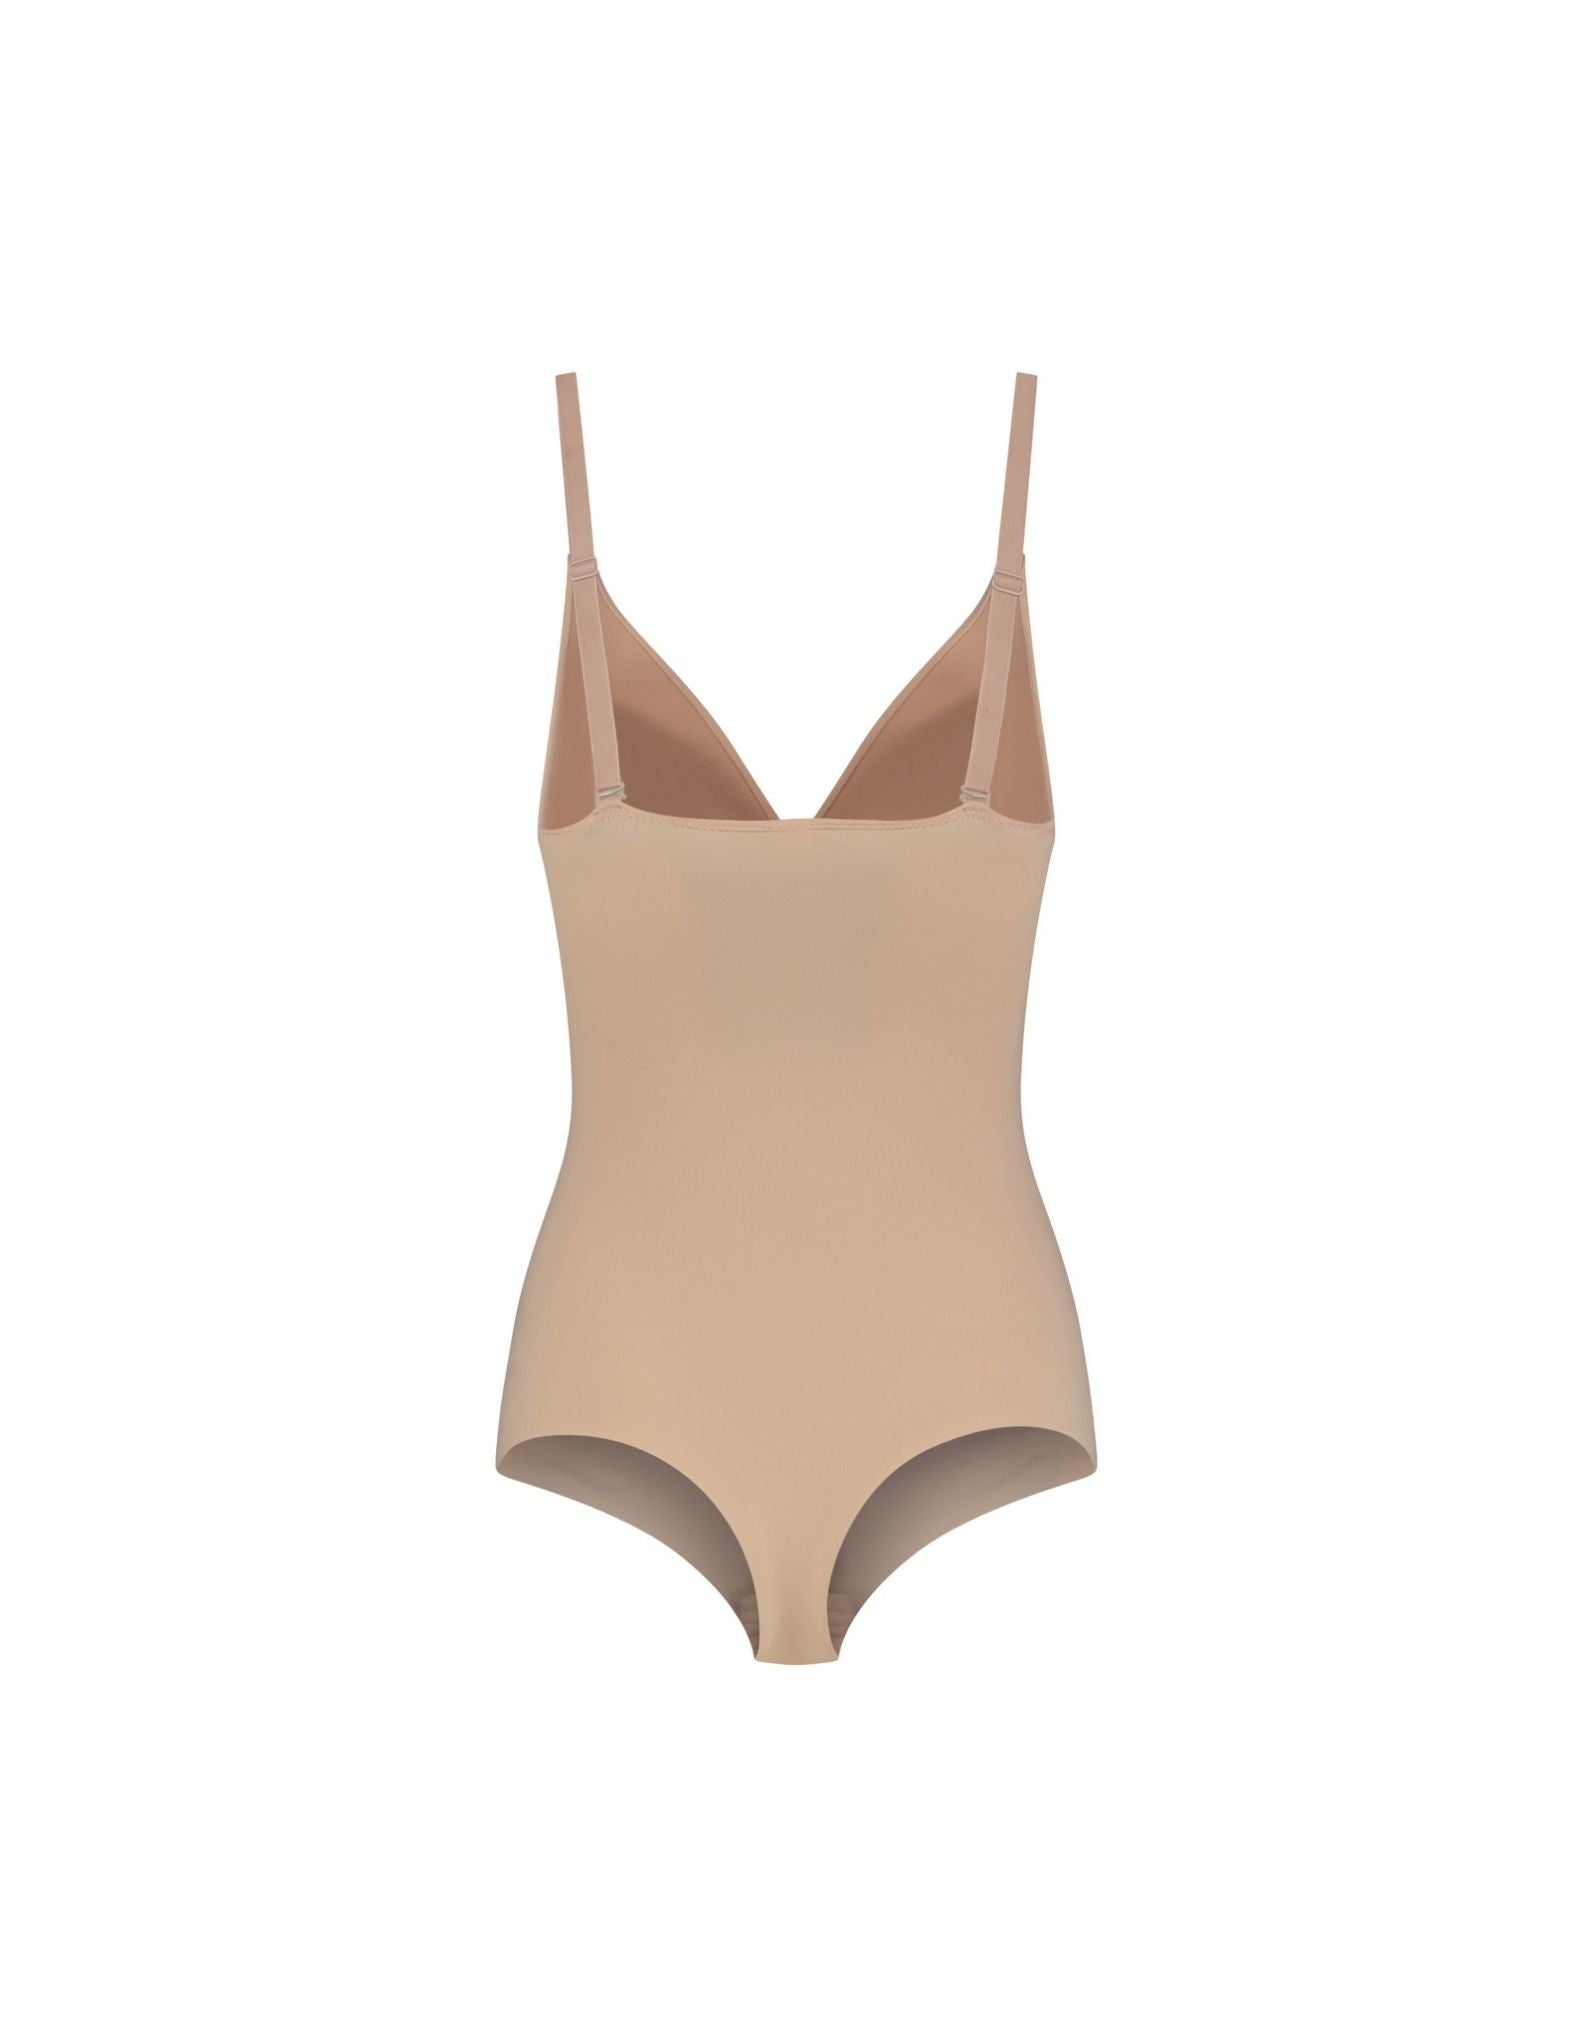 https://www.nshelley.co.uk/cdn/shop/products/sculpting-bodysuit-wire-free-beige-back-product.jpg?v=1668088965&width=1946